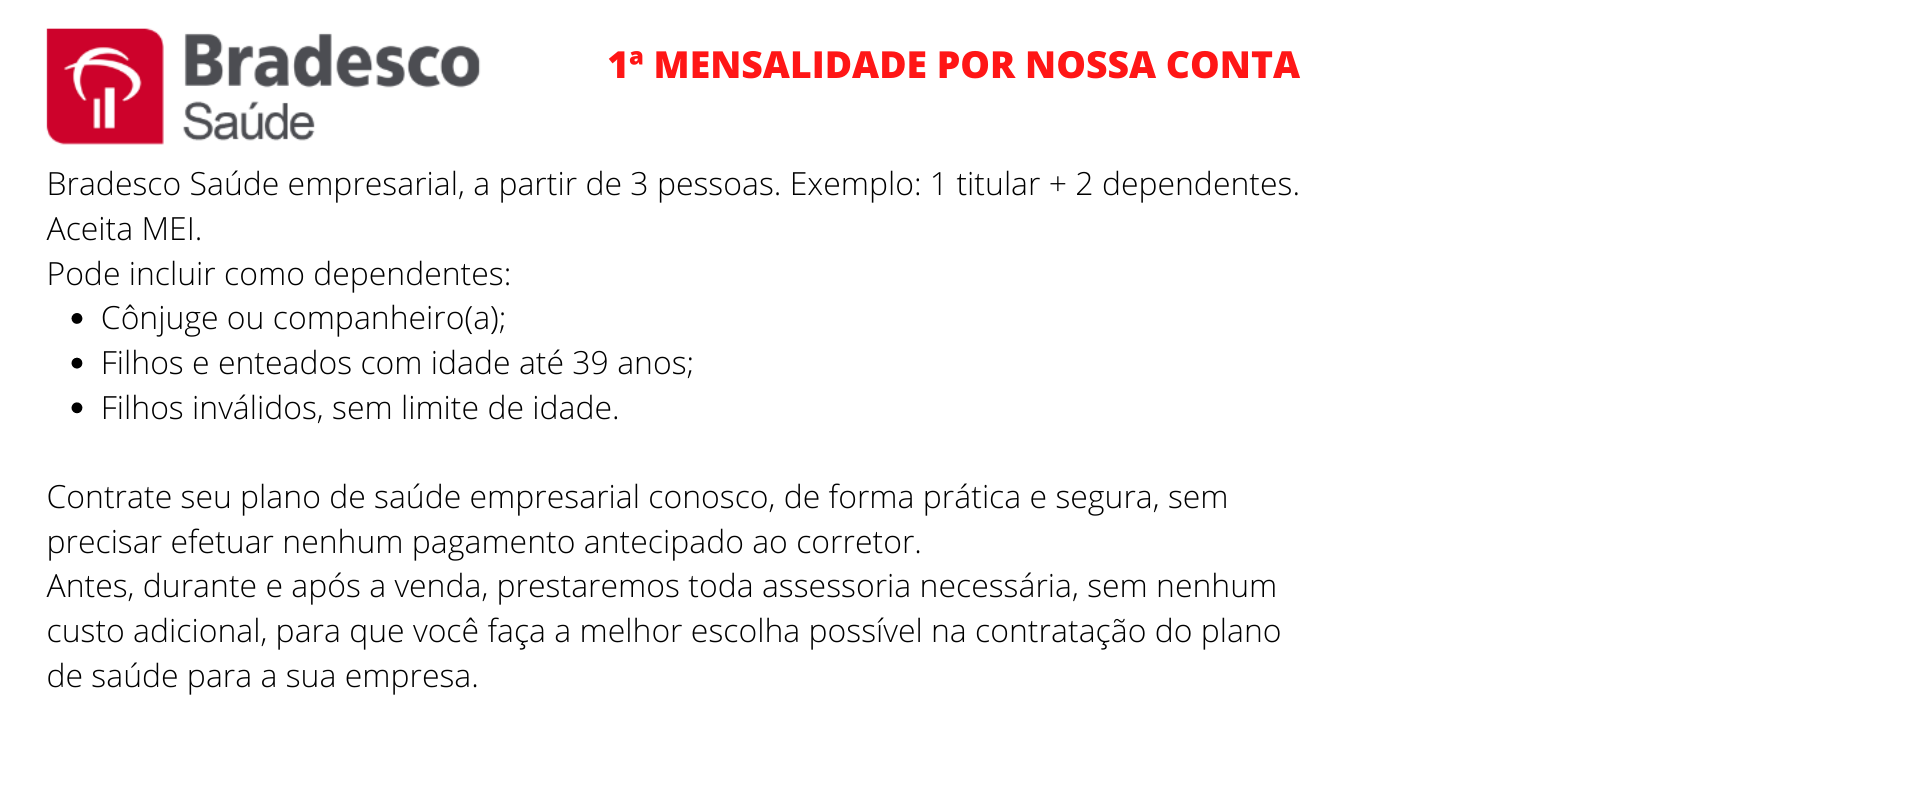 Bradesco Saúde Empresarial - Santos